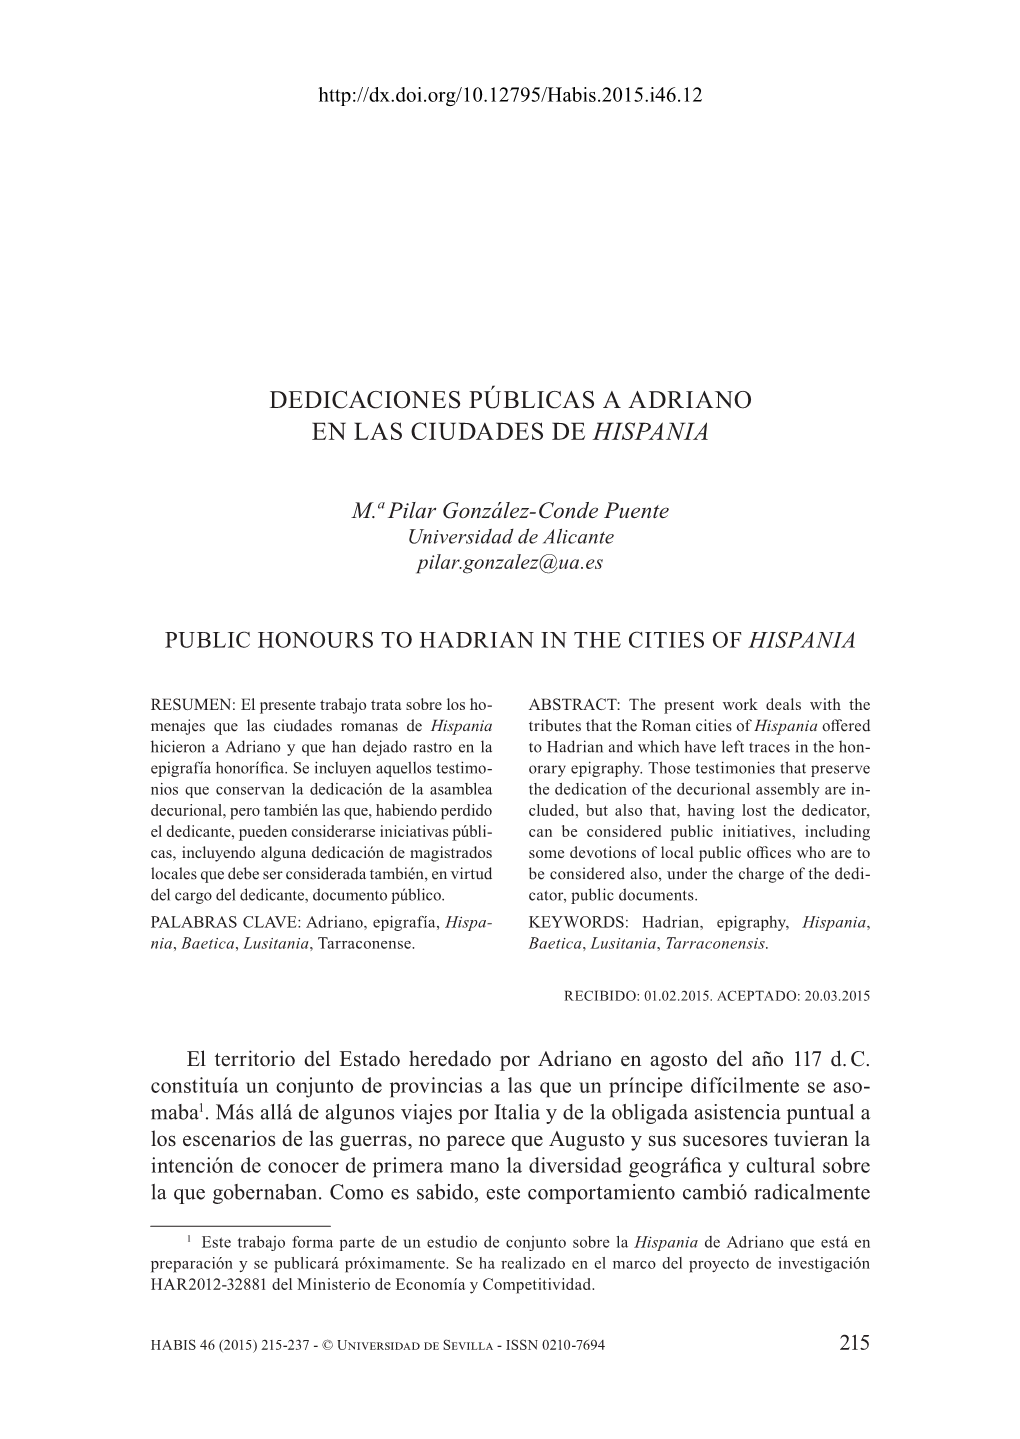 Dedicaciones Públicas a Adriano En Las Ciudades De Hispania